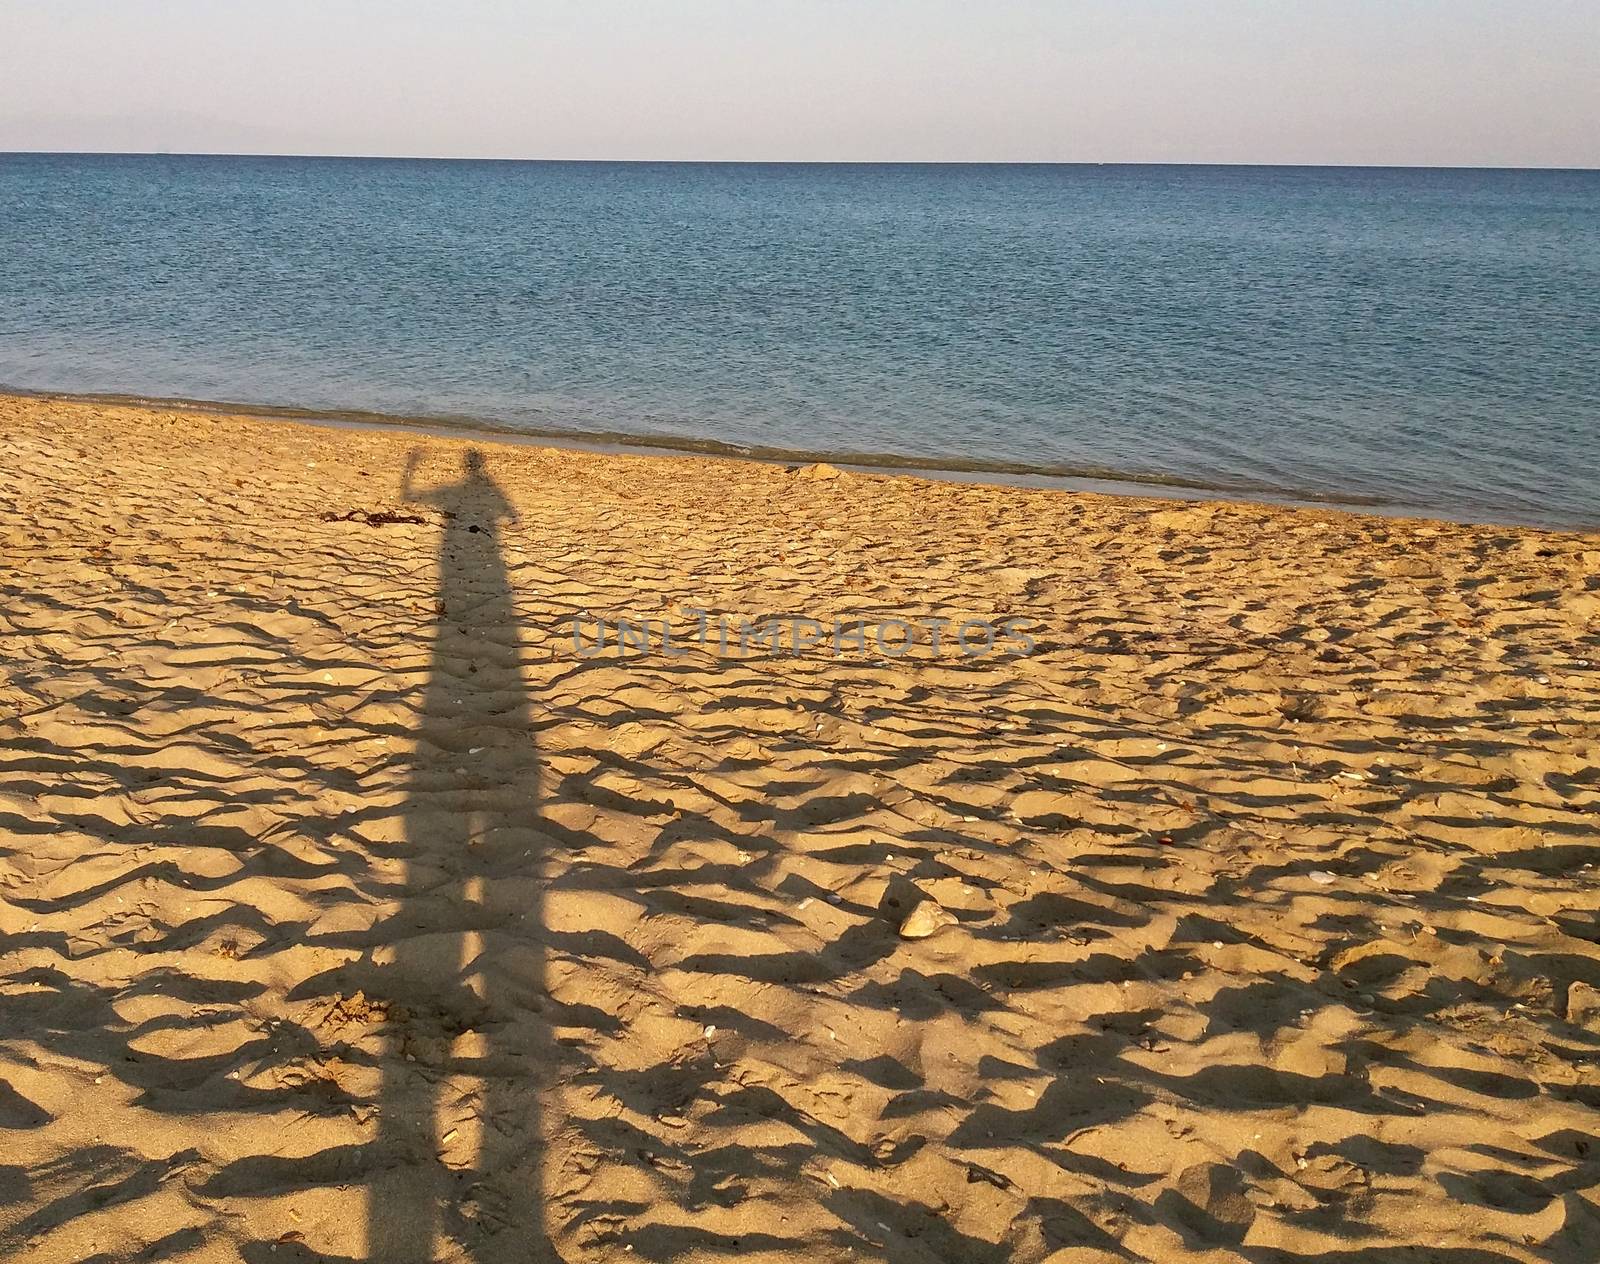 Man's shadow at the sandy beach, Mediteranean sea, Greece